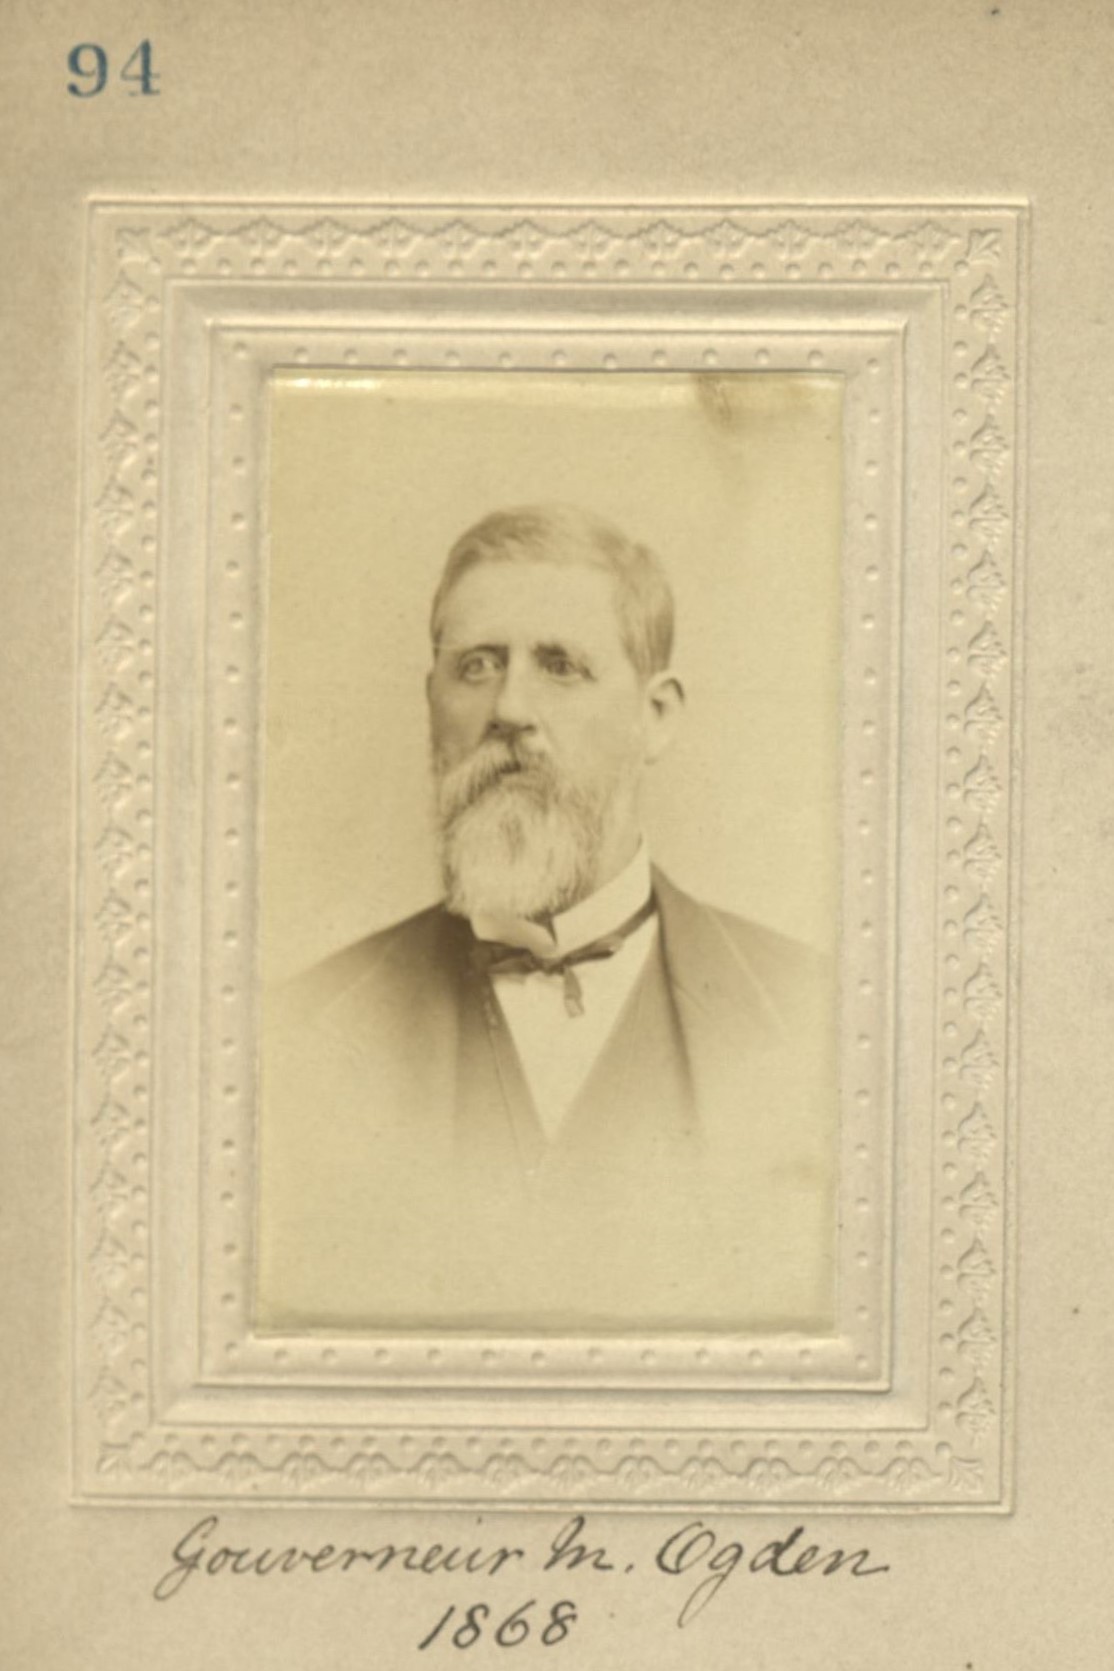 Member portrait of Gouverneur M. Ogden